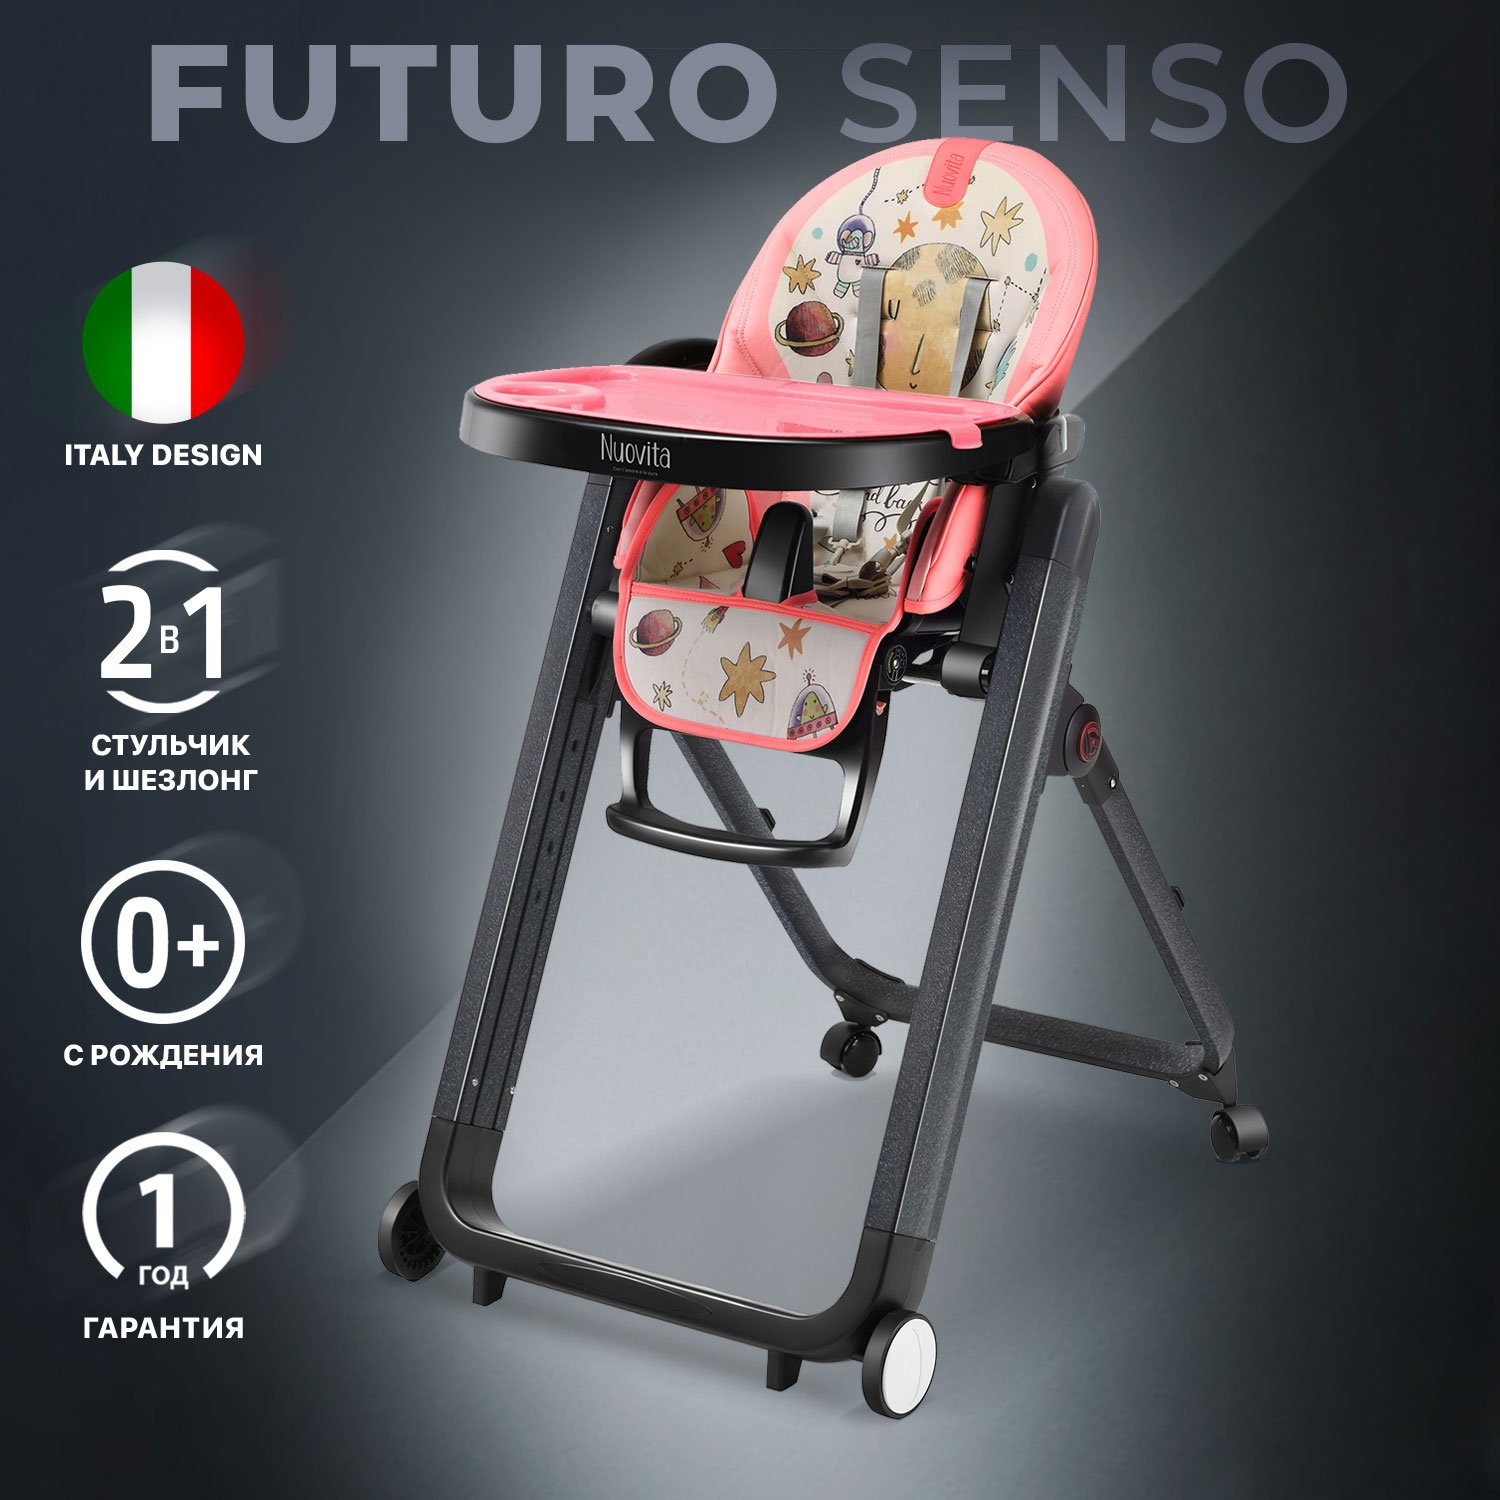 Стульчик для кормления Nuovita Futuro Senso Nero (Cosmo rosa/Розовый космос) стульчик для кормления nuovita futuro nero blu голубой